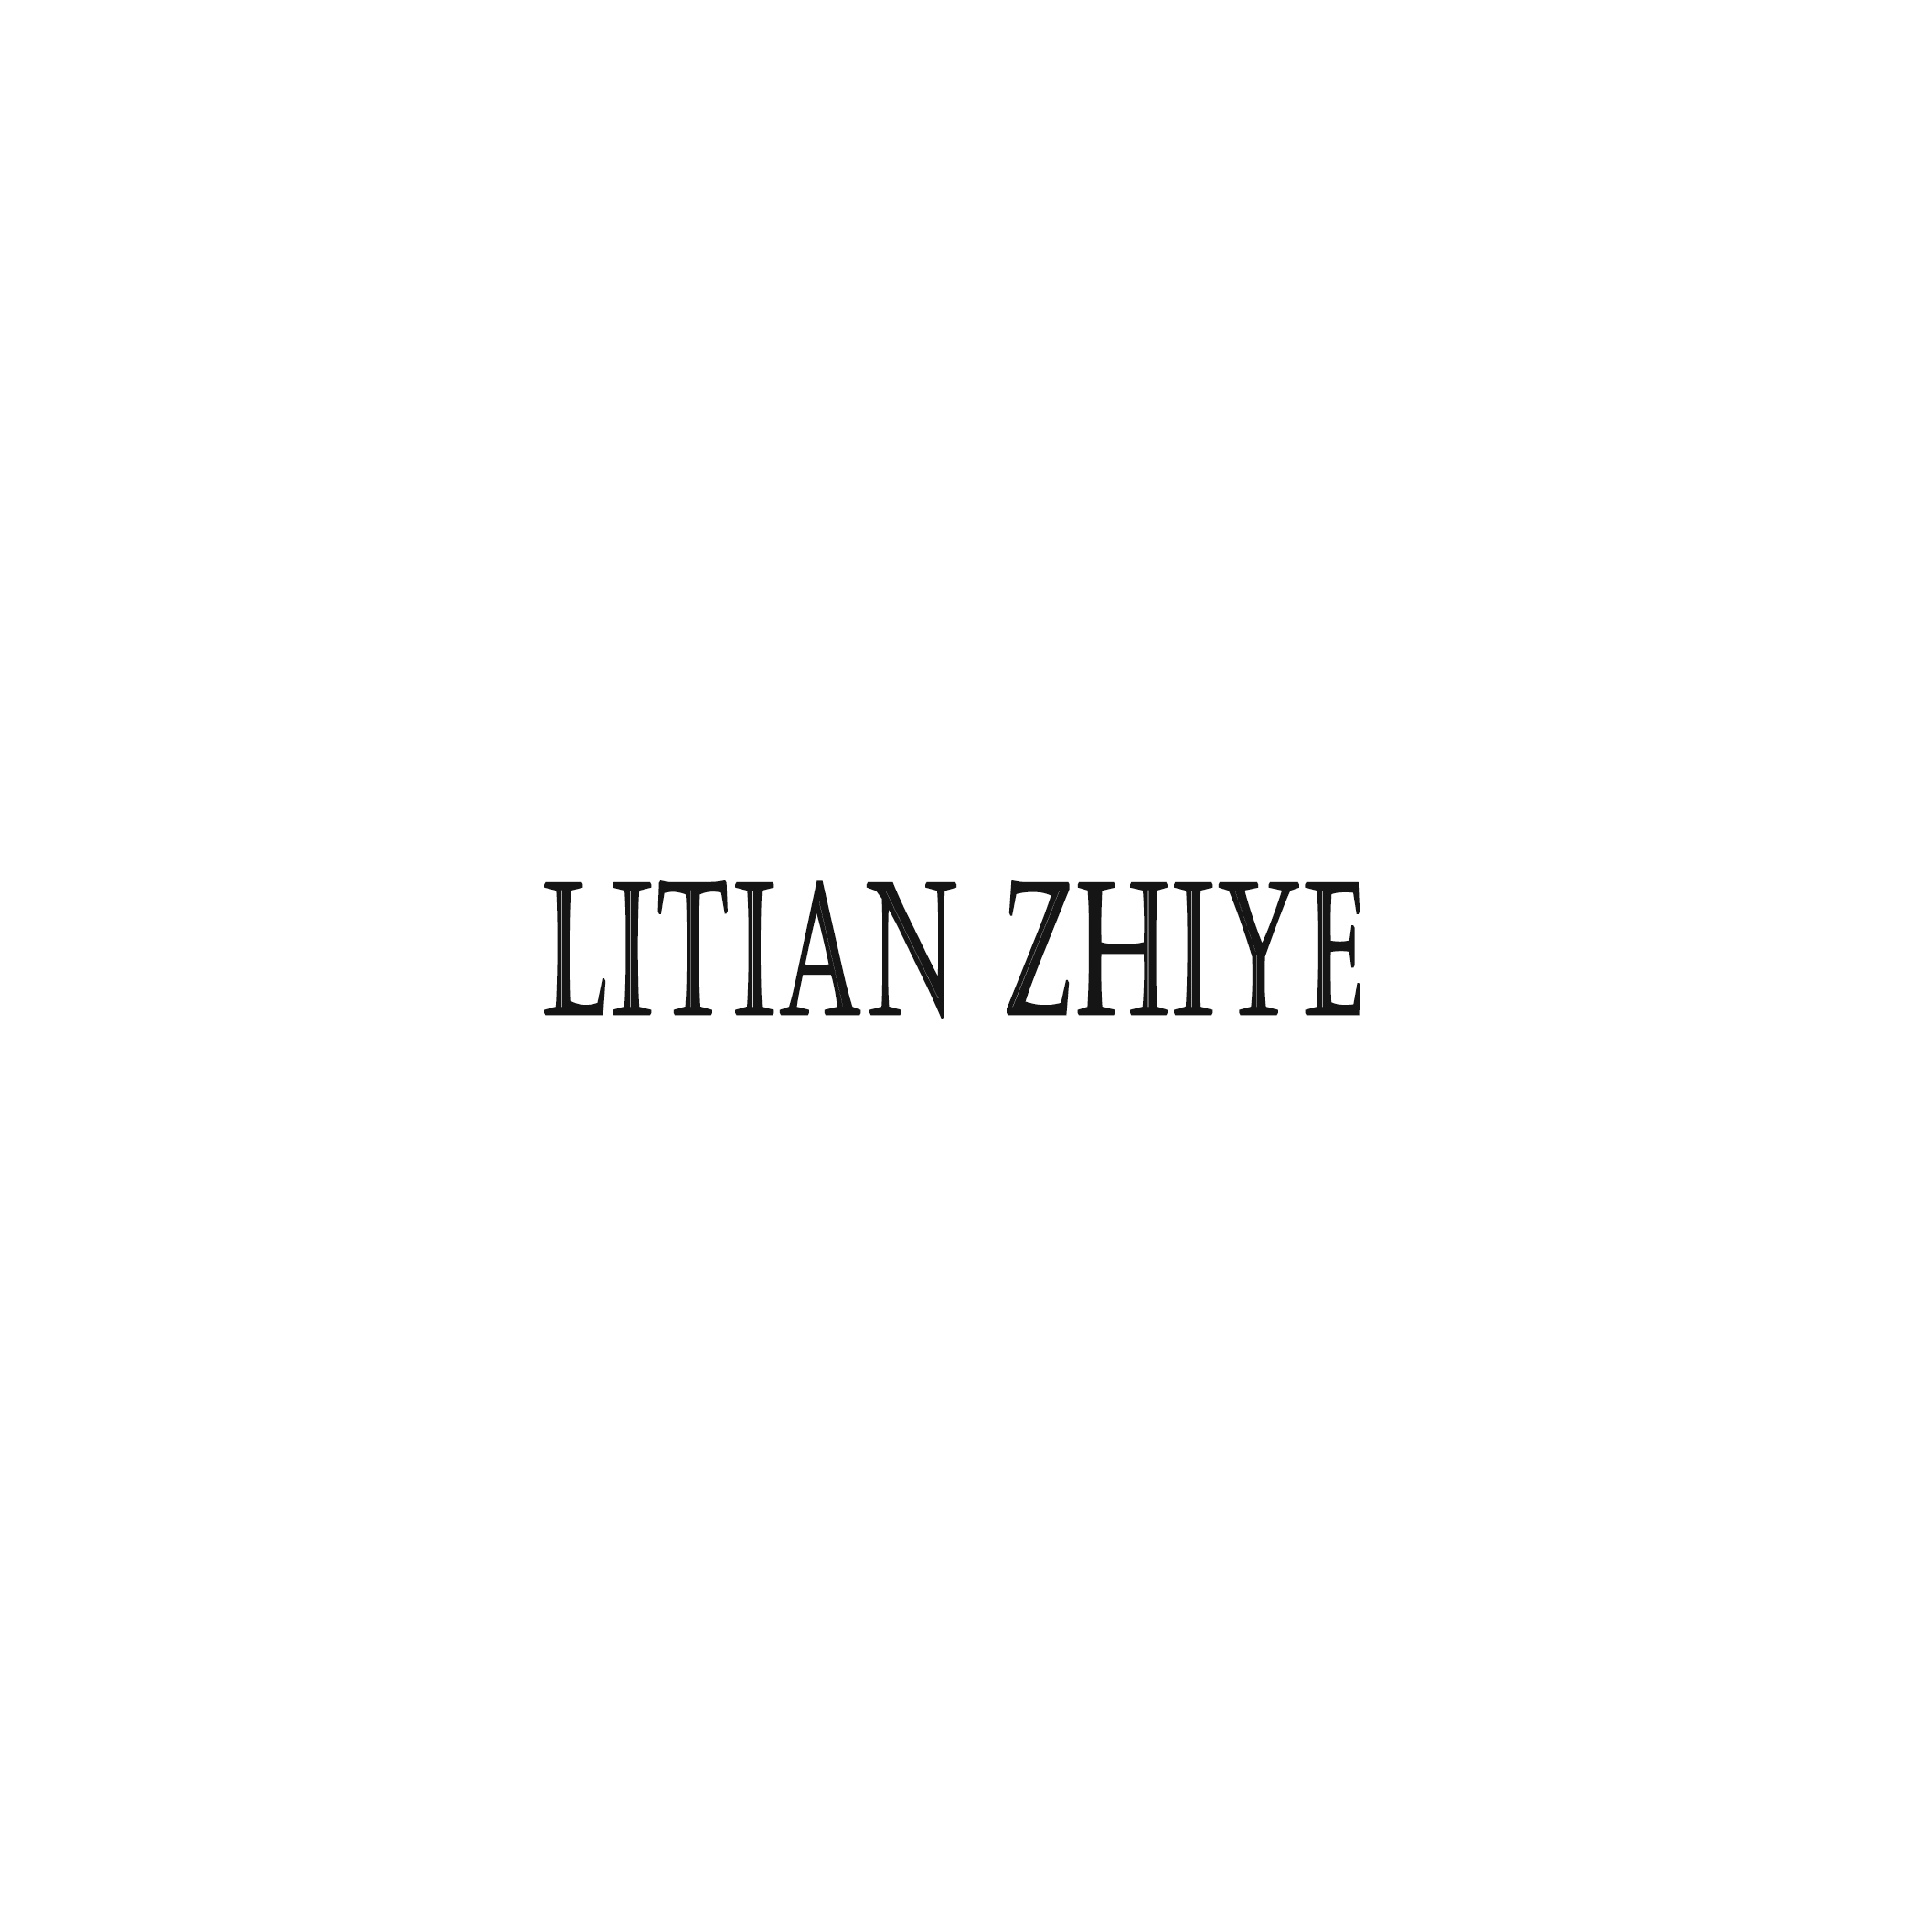 Product Brand: Litian Zhiye